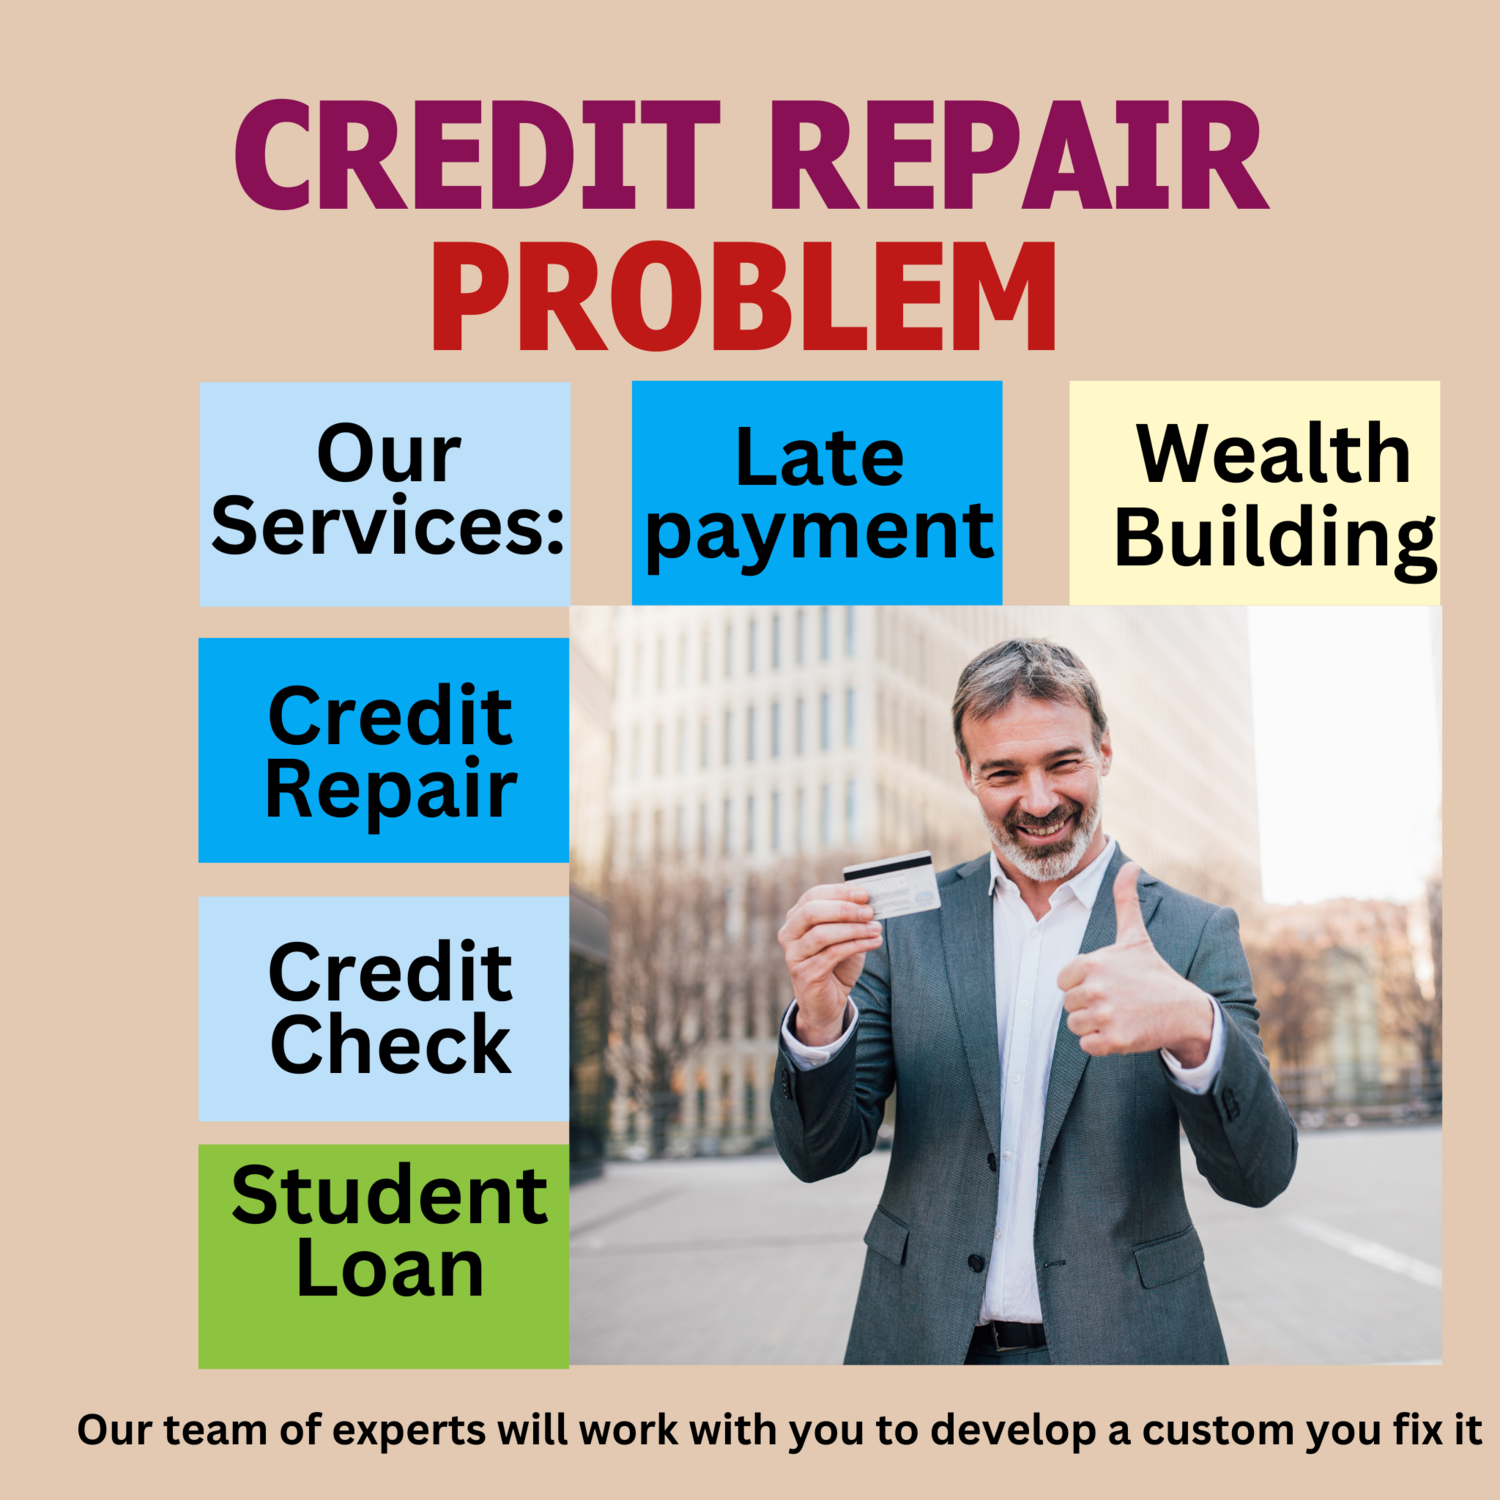 Credit Repair problem